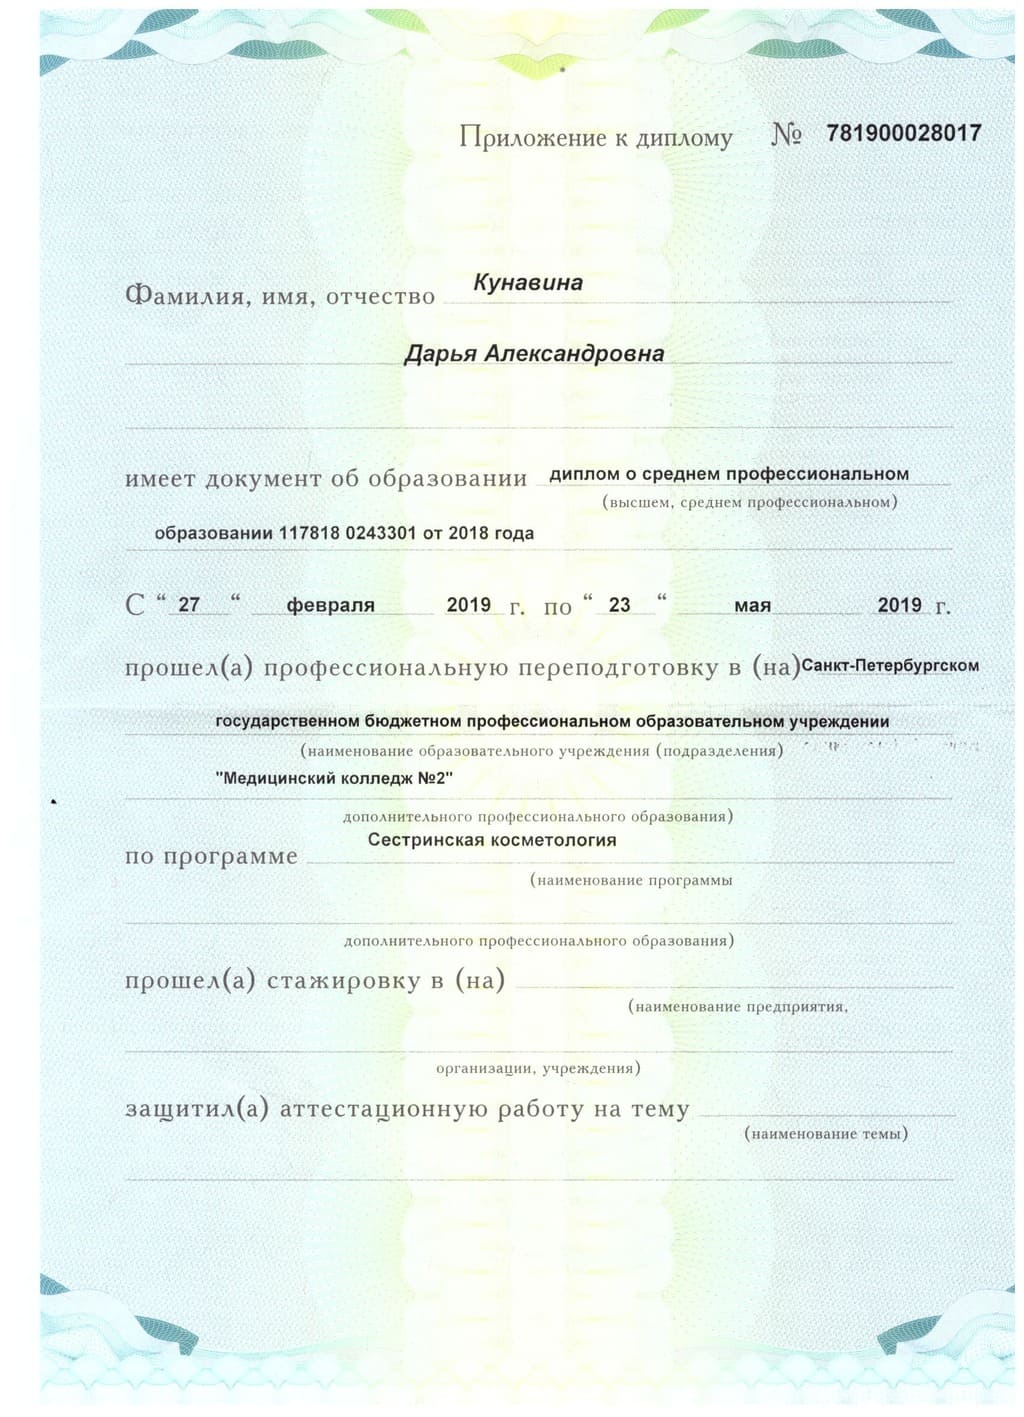 Документ подтверждающий что Дарья Александровна Кунавина получил(а) диплом профильного образования по специальности сестринская косметология